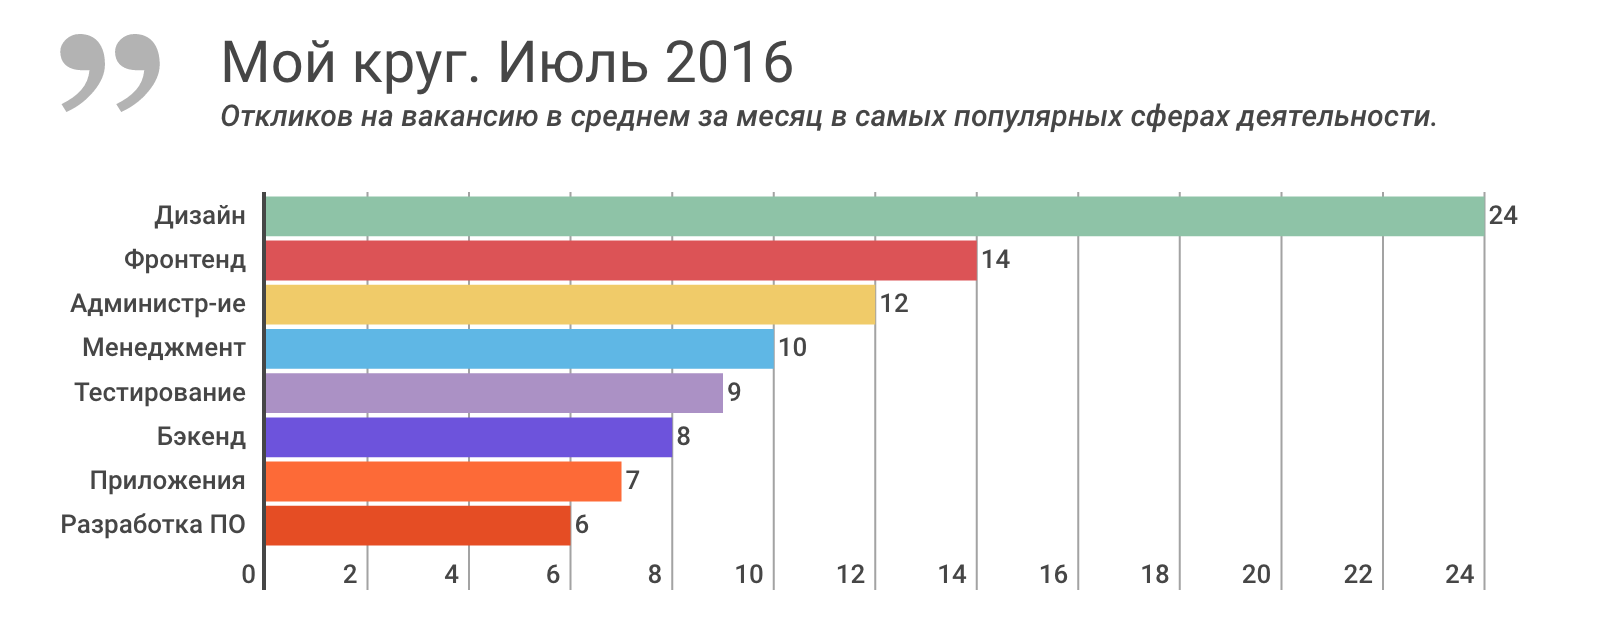 Отчет о результатах «Моего круга» за июль 2016, и самые популярные вакансии месяца - 1